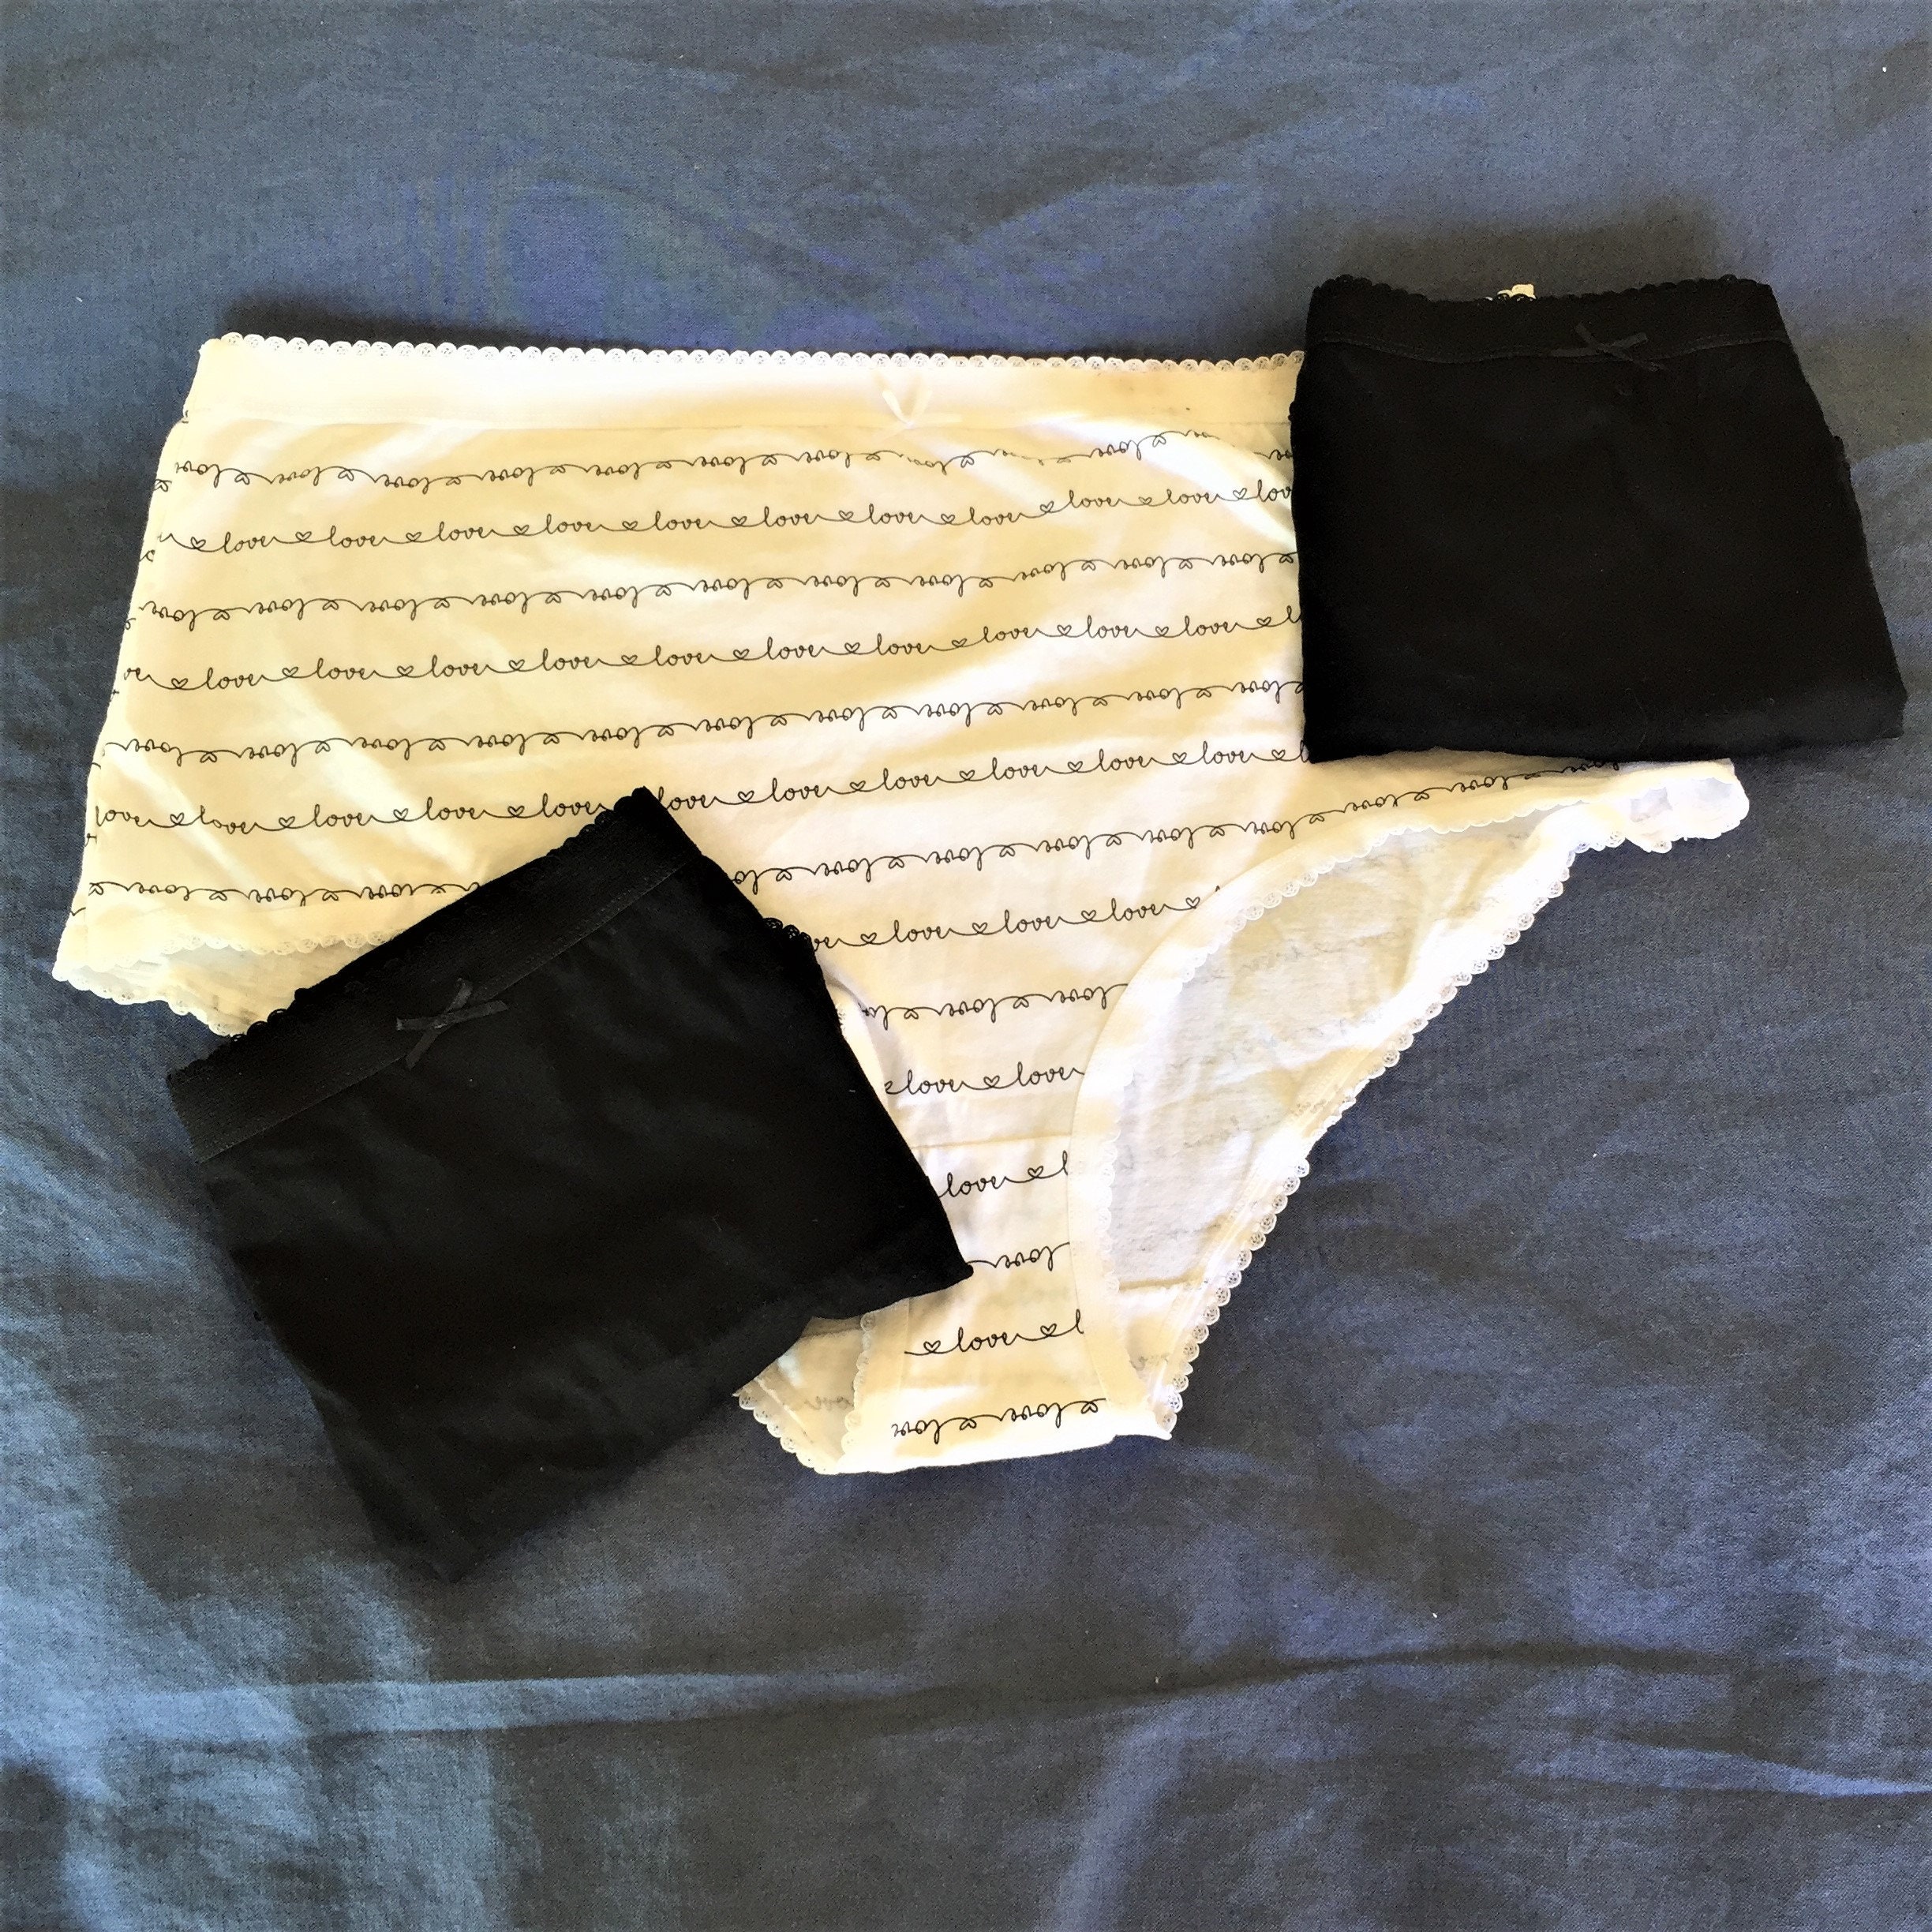 THINX Period Underwear Reviews